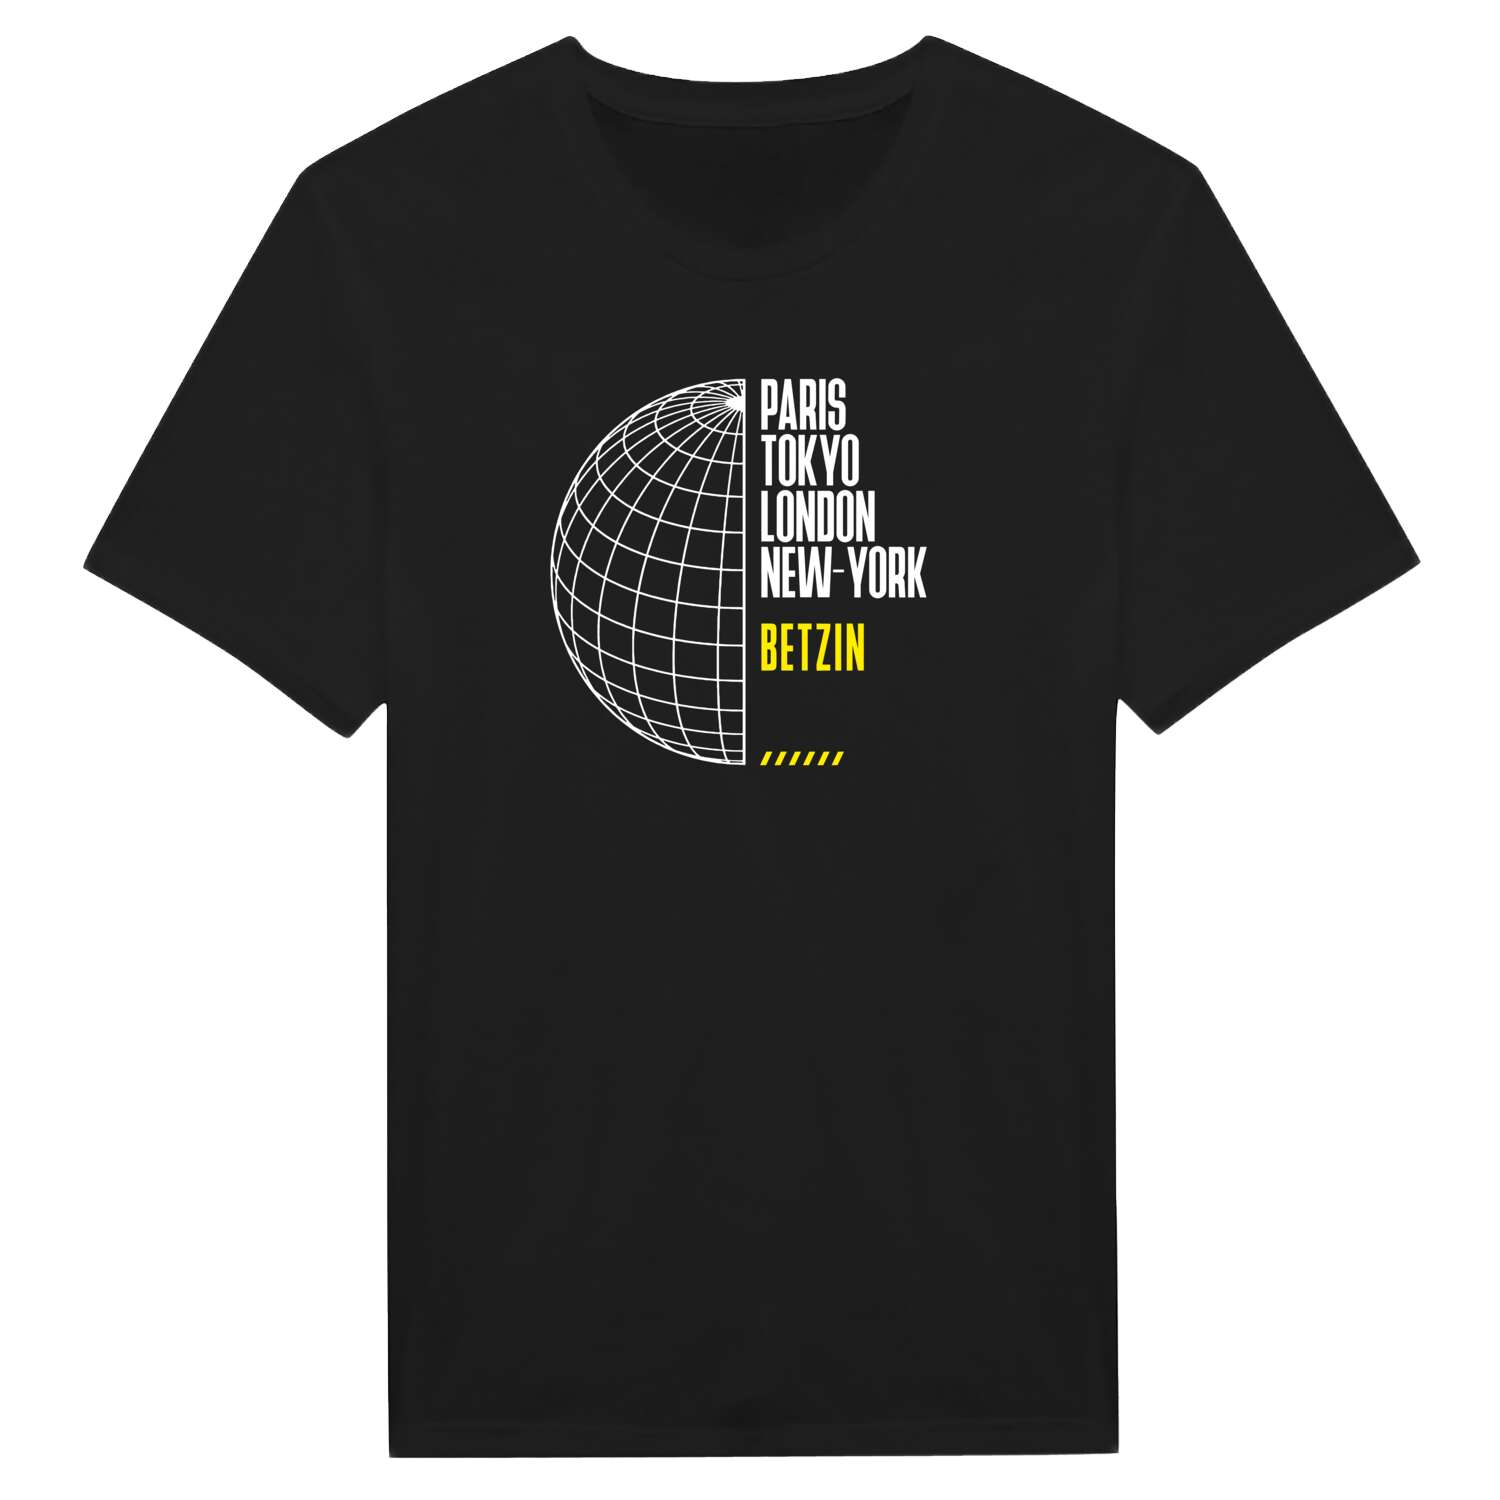 Betzin T-Shirt »Paris Tokyo London«